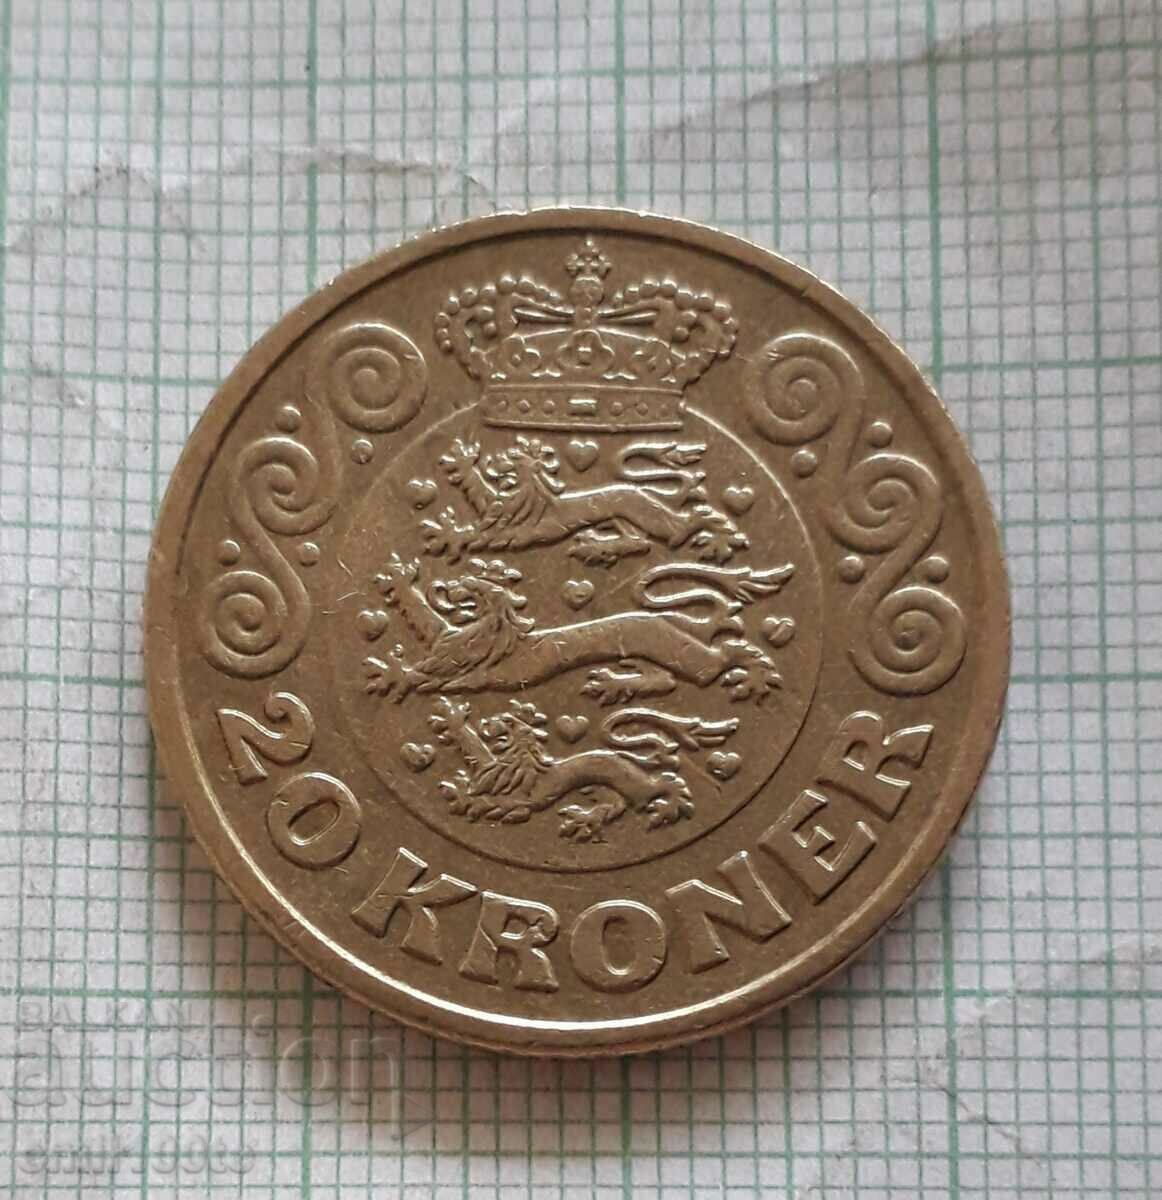 20 крони 2014 г. Дания